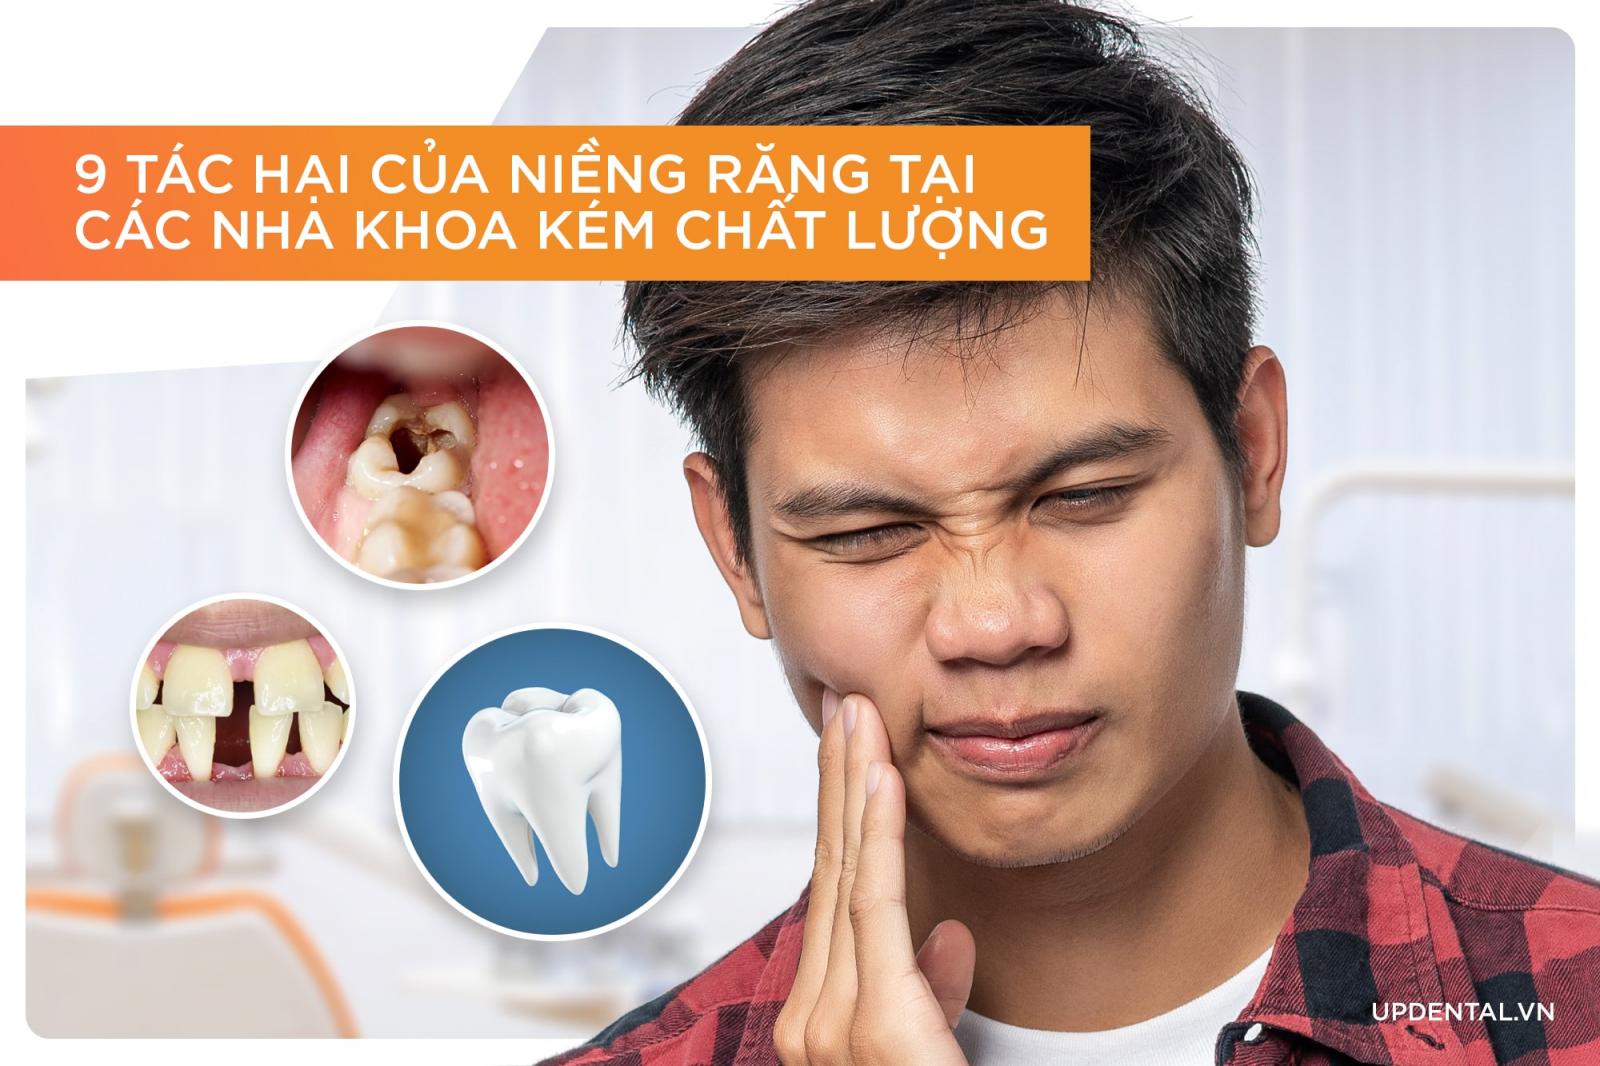 9 tác hại của niềng răng